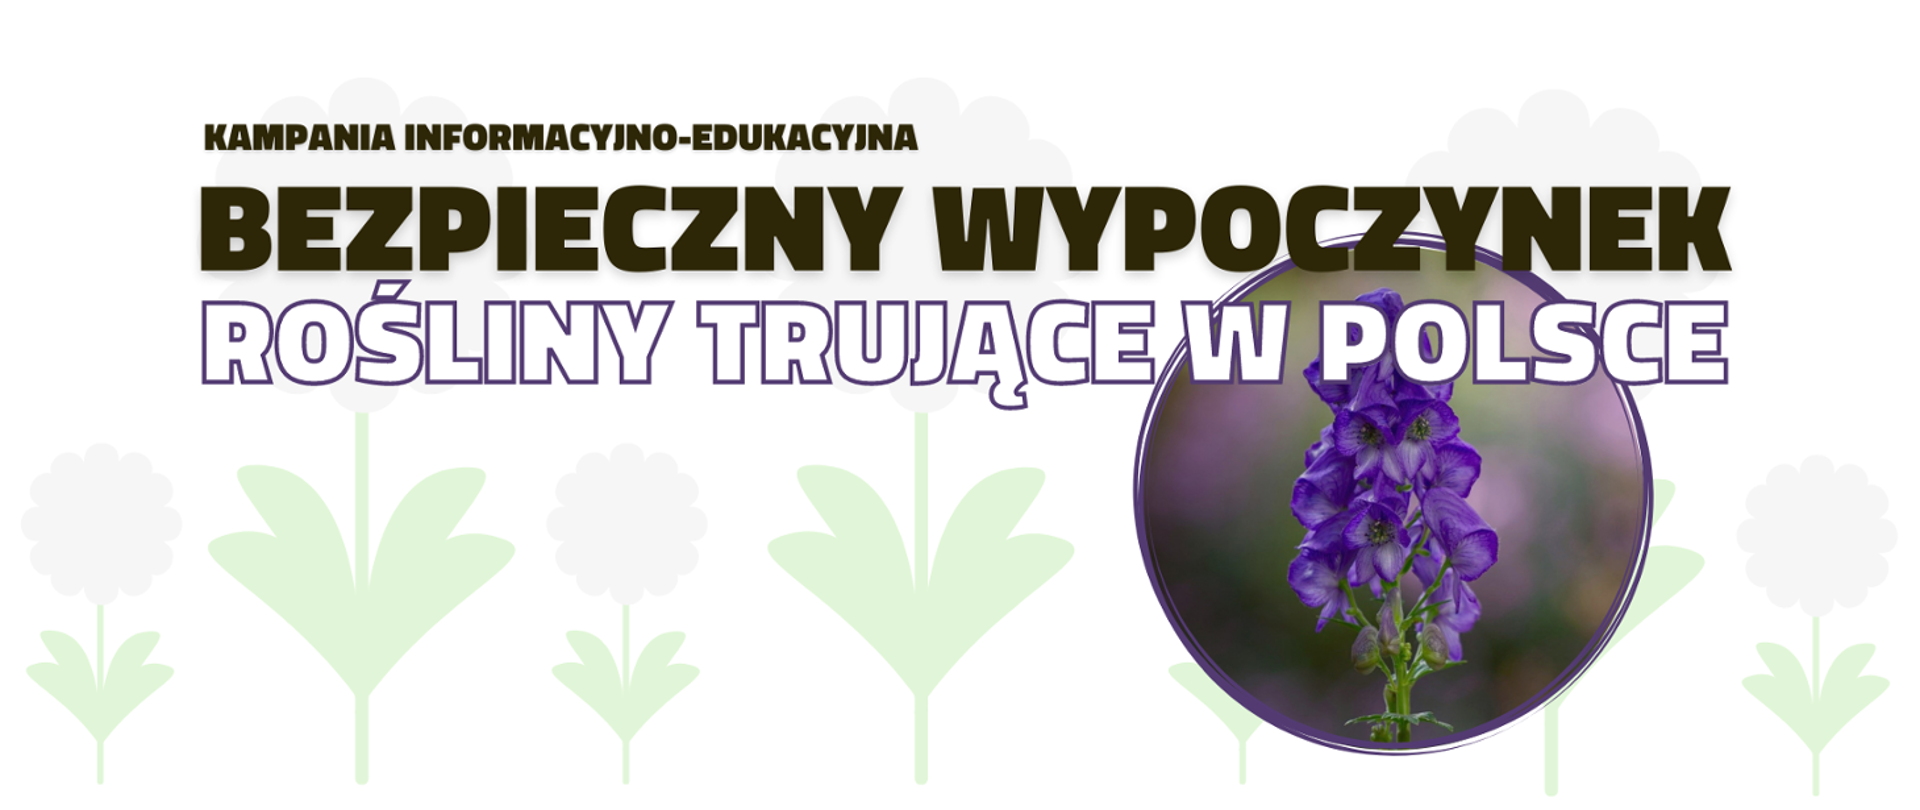 Po prawej stronie w kółku fioletowa naparstnica. Na środku napis "Kampania informacyjno-edukacyjna Bezpieczny wypoczynek. Rośliny trujące w Polsce"